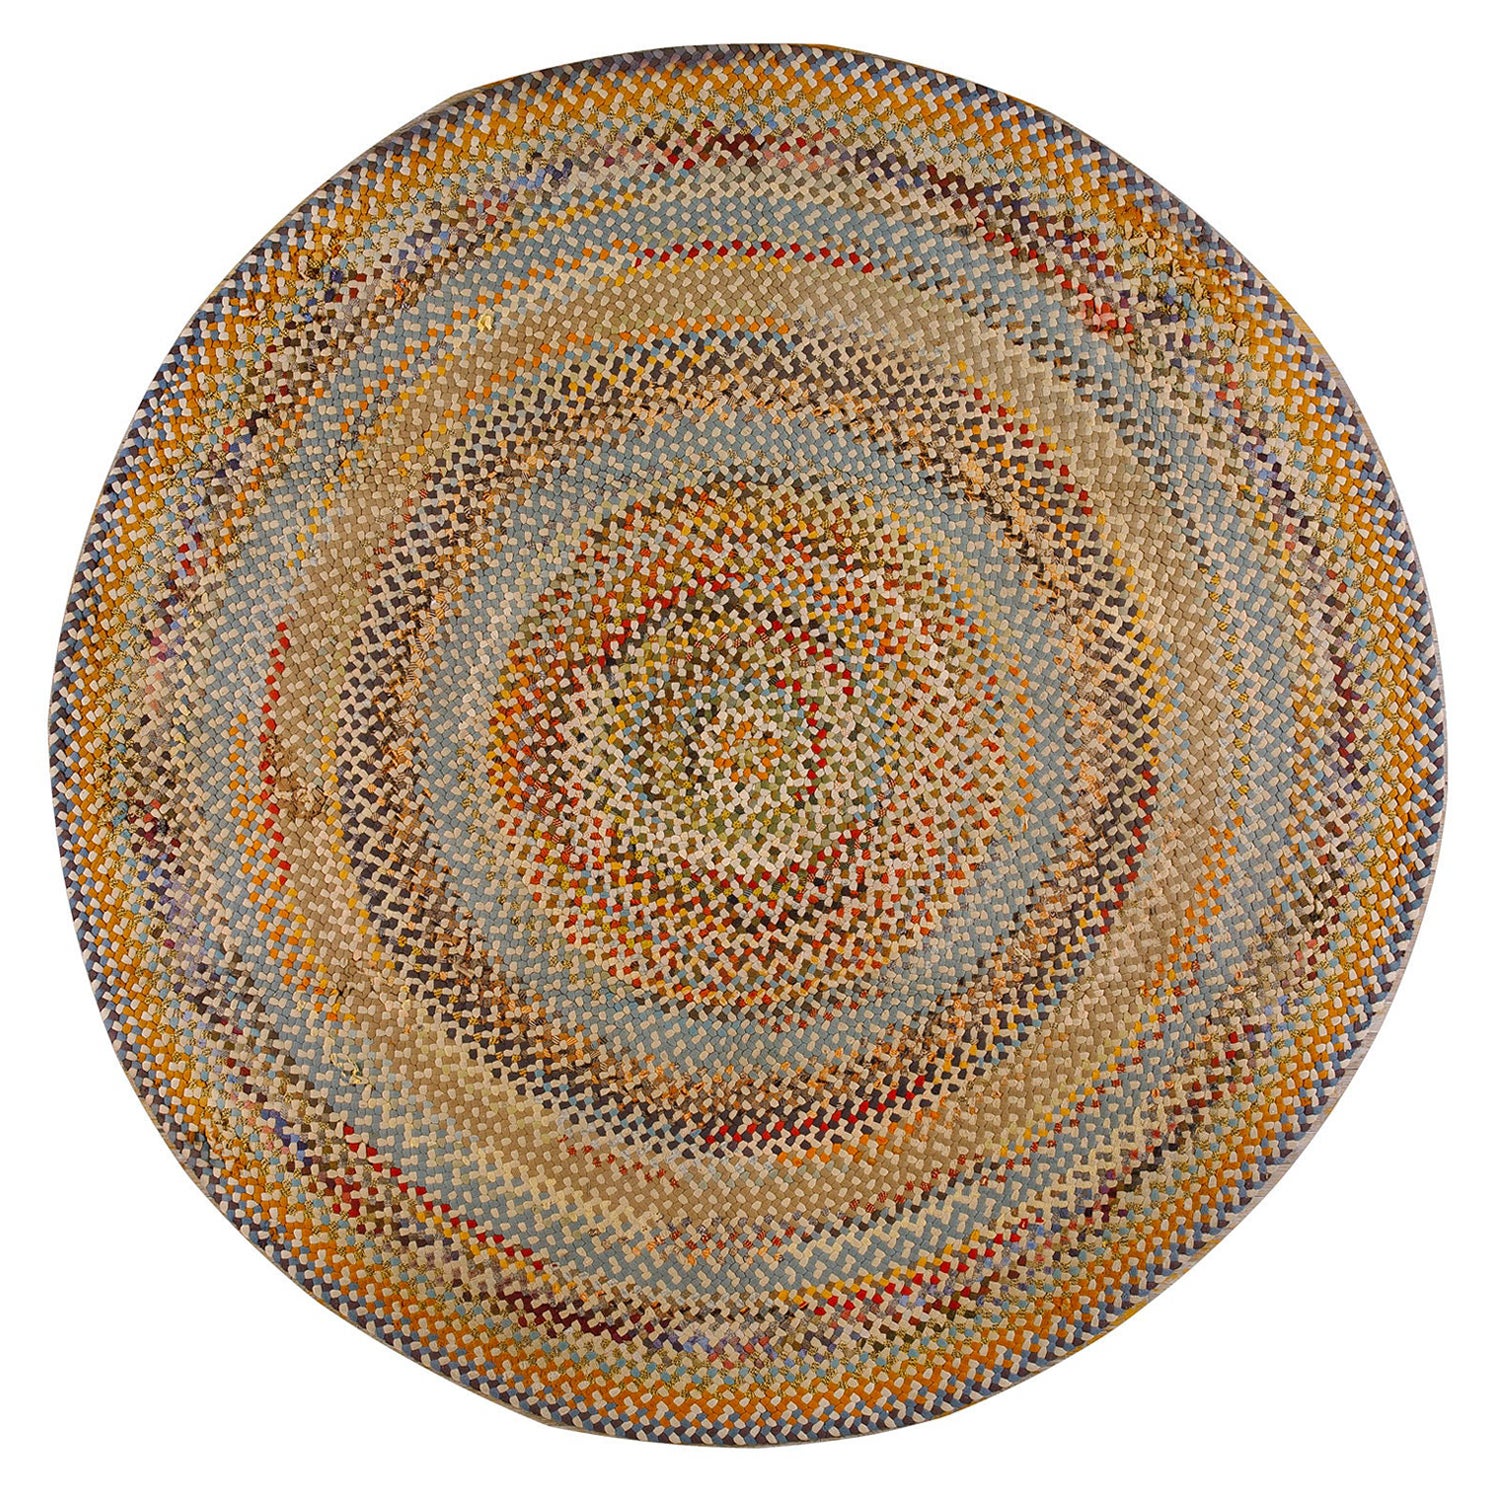 Amerikanischer Flechtteppich des frühen 20. Jahrhunderts ( 8' x 8' - 245 x 245 )